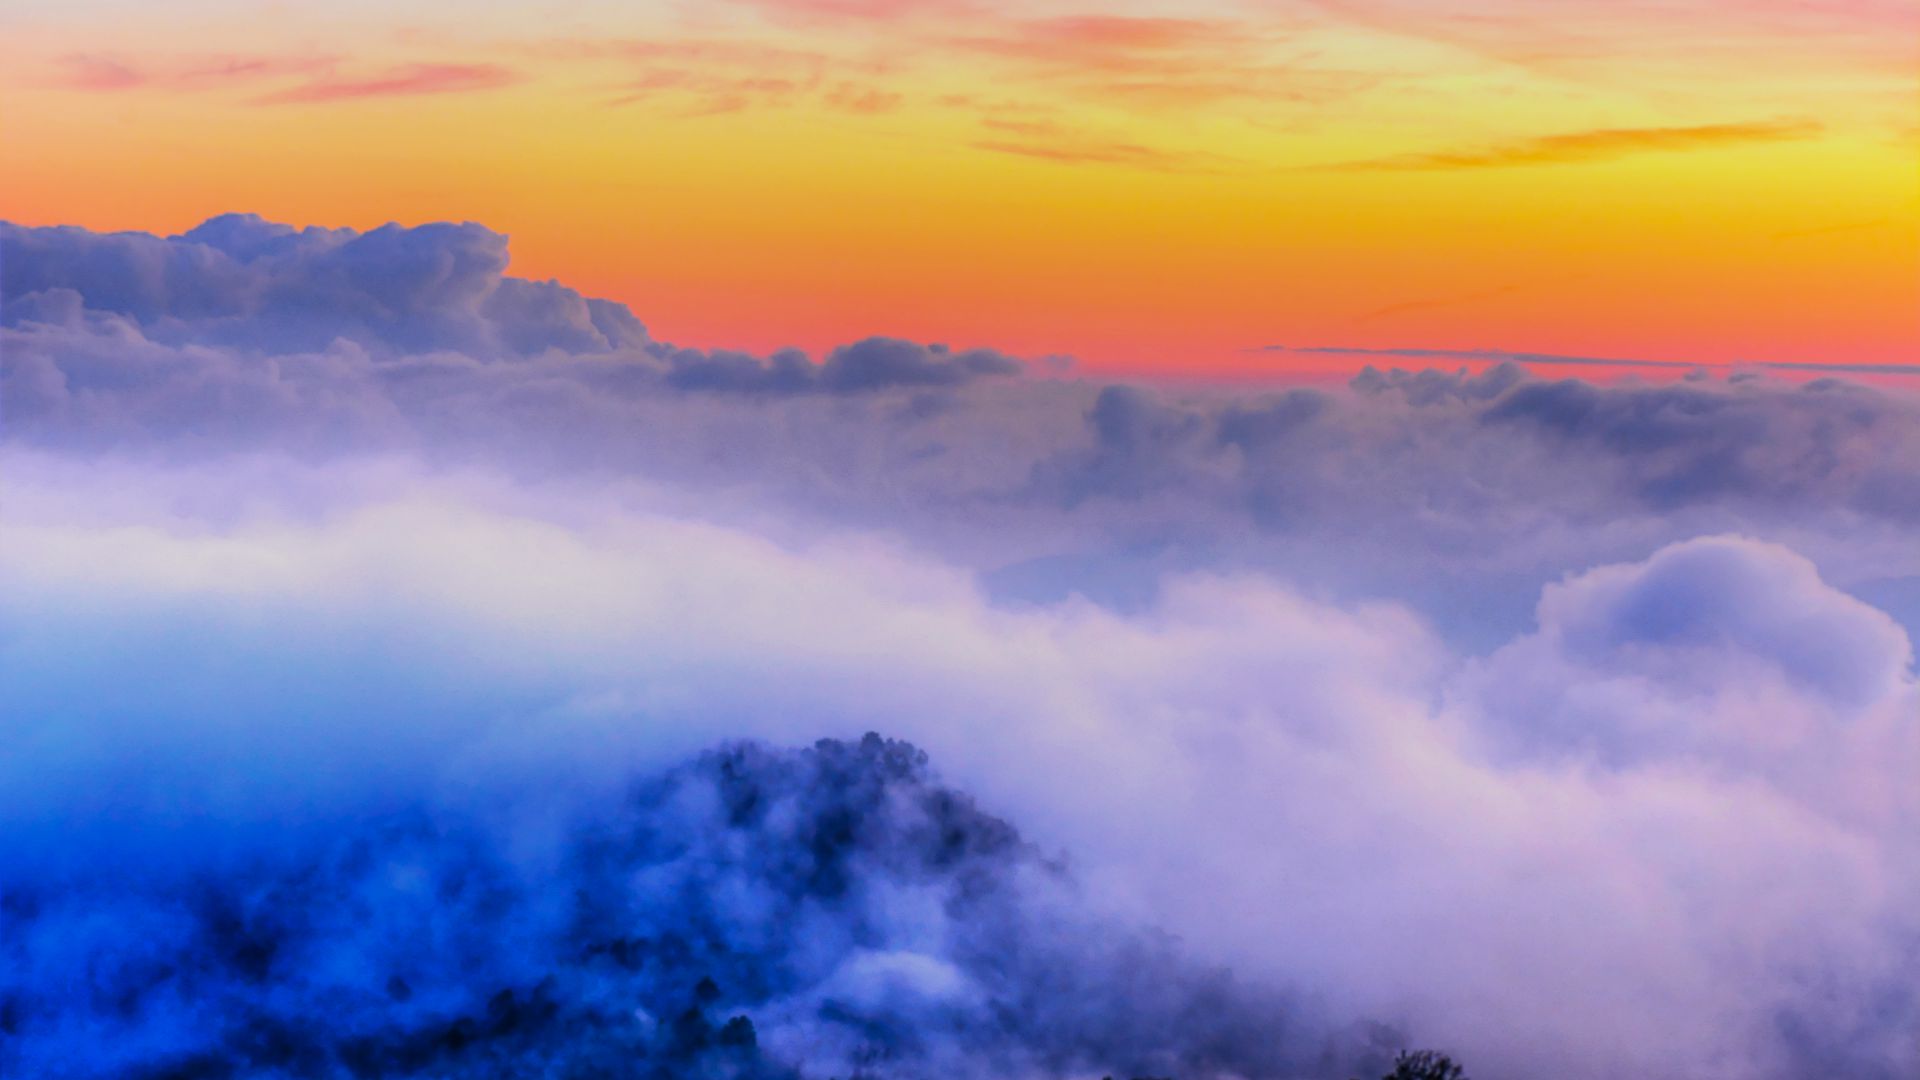 Альпы, 5k, 4k, 8k, Франция, закат, облака, Alps, 5k, 4k wallpaper, 8k, France, sunset, clouds (horizontal)